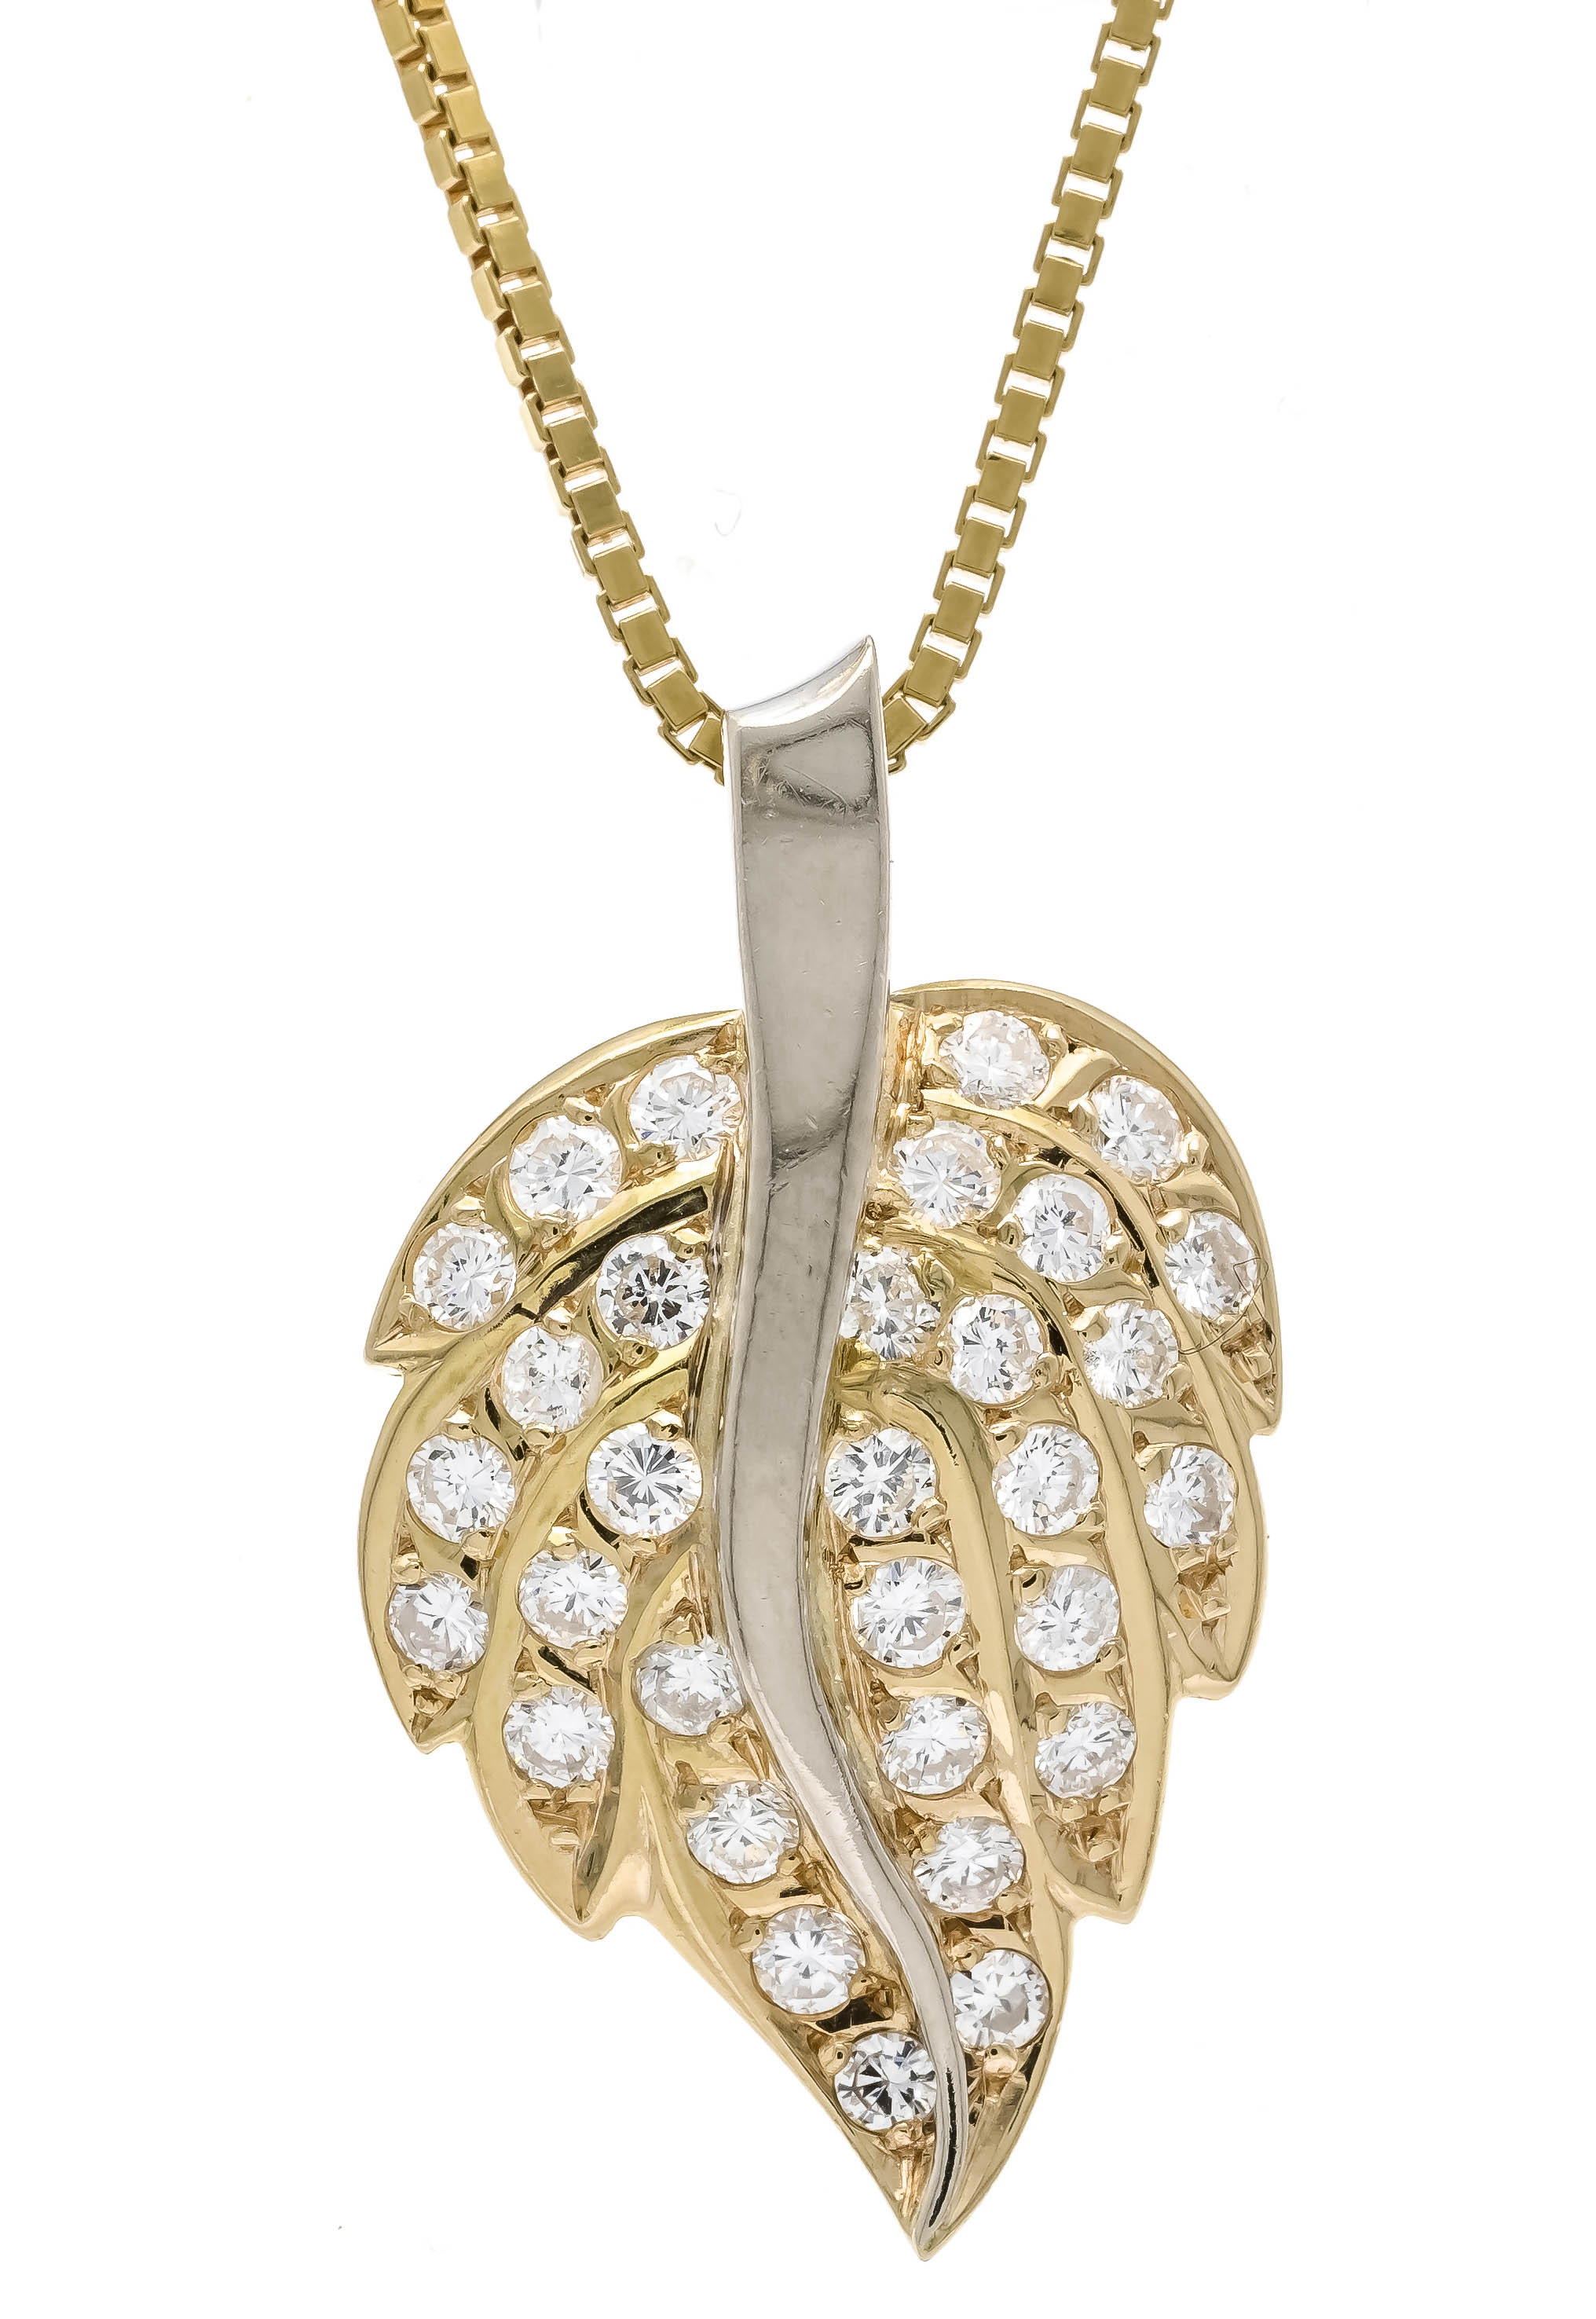 Brilliant pendant GG/WG 750/000 with 31 brilliant-cut diamonds, total 0.92 ct fine white+ - fine